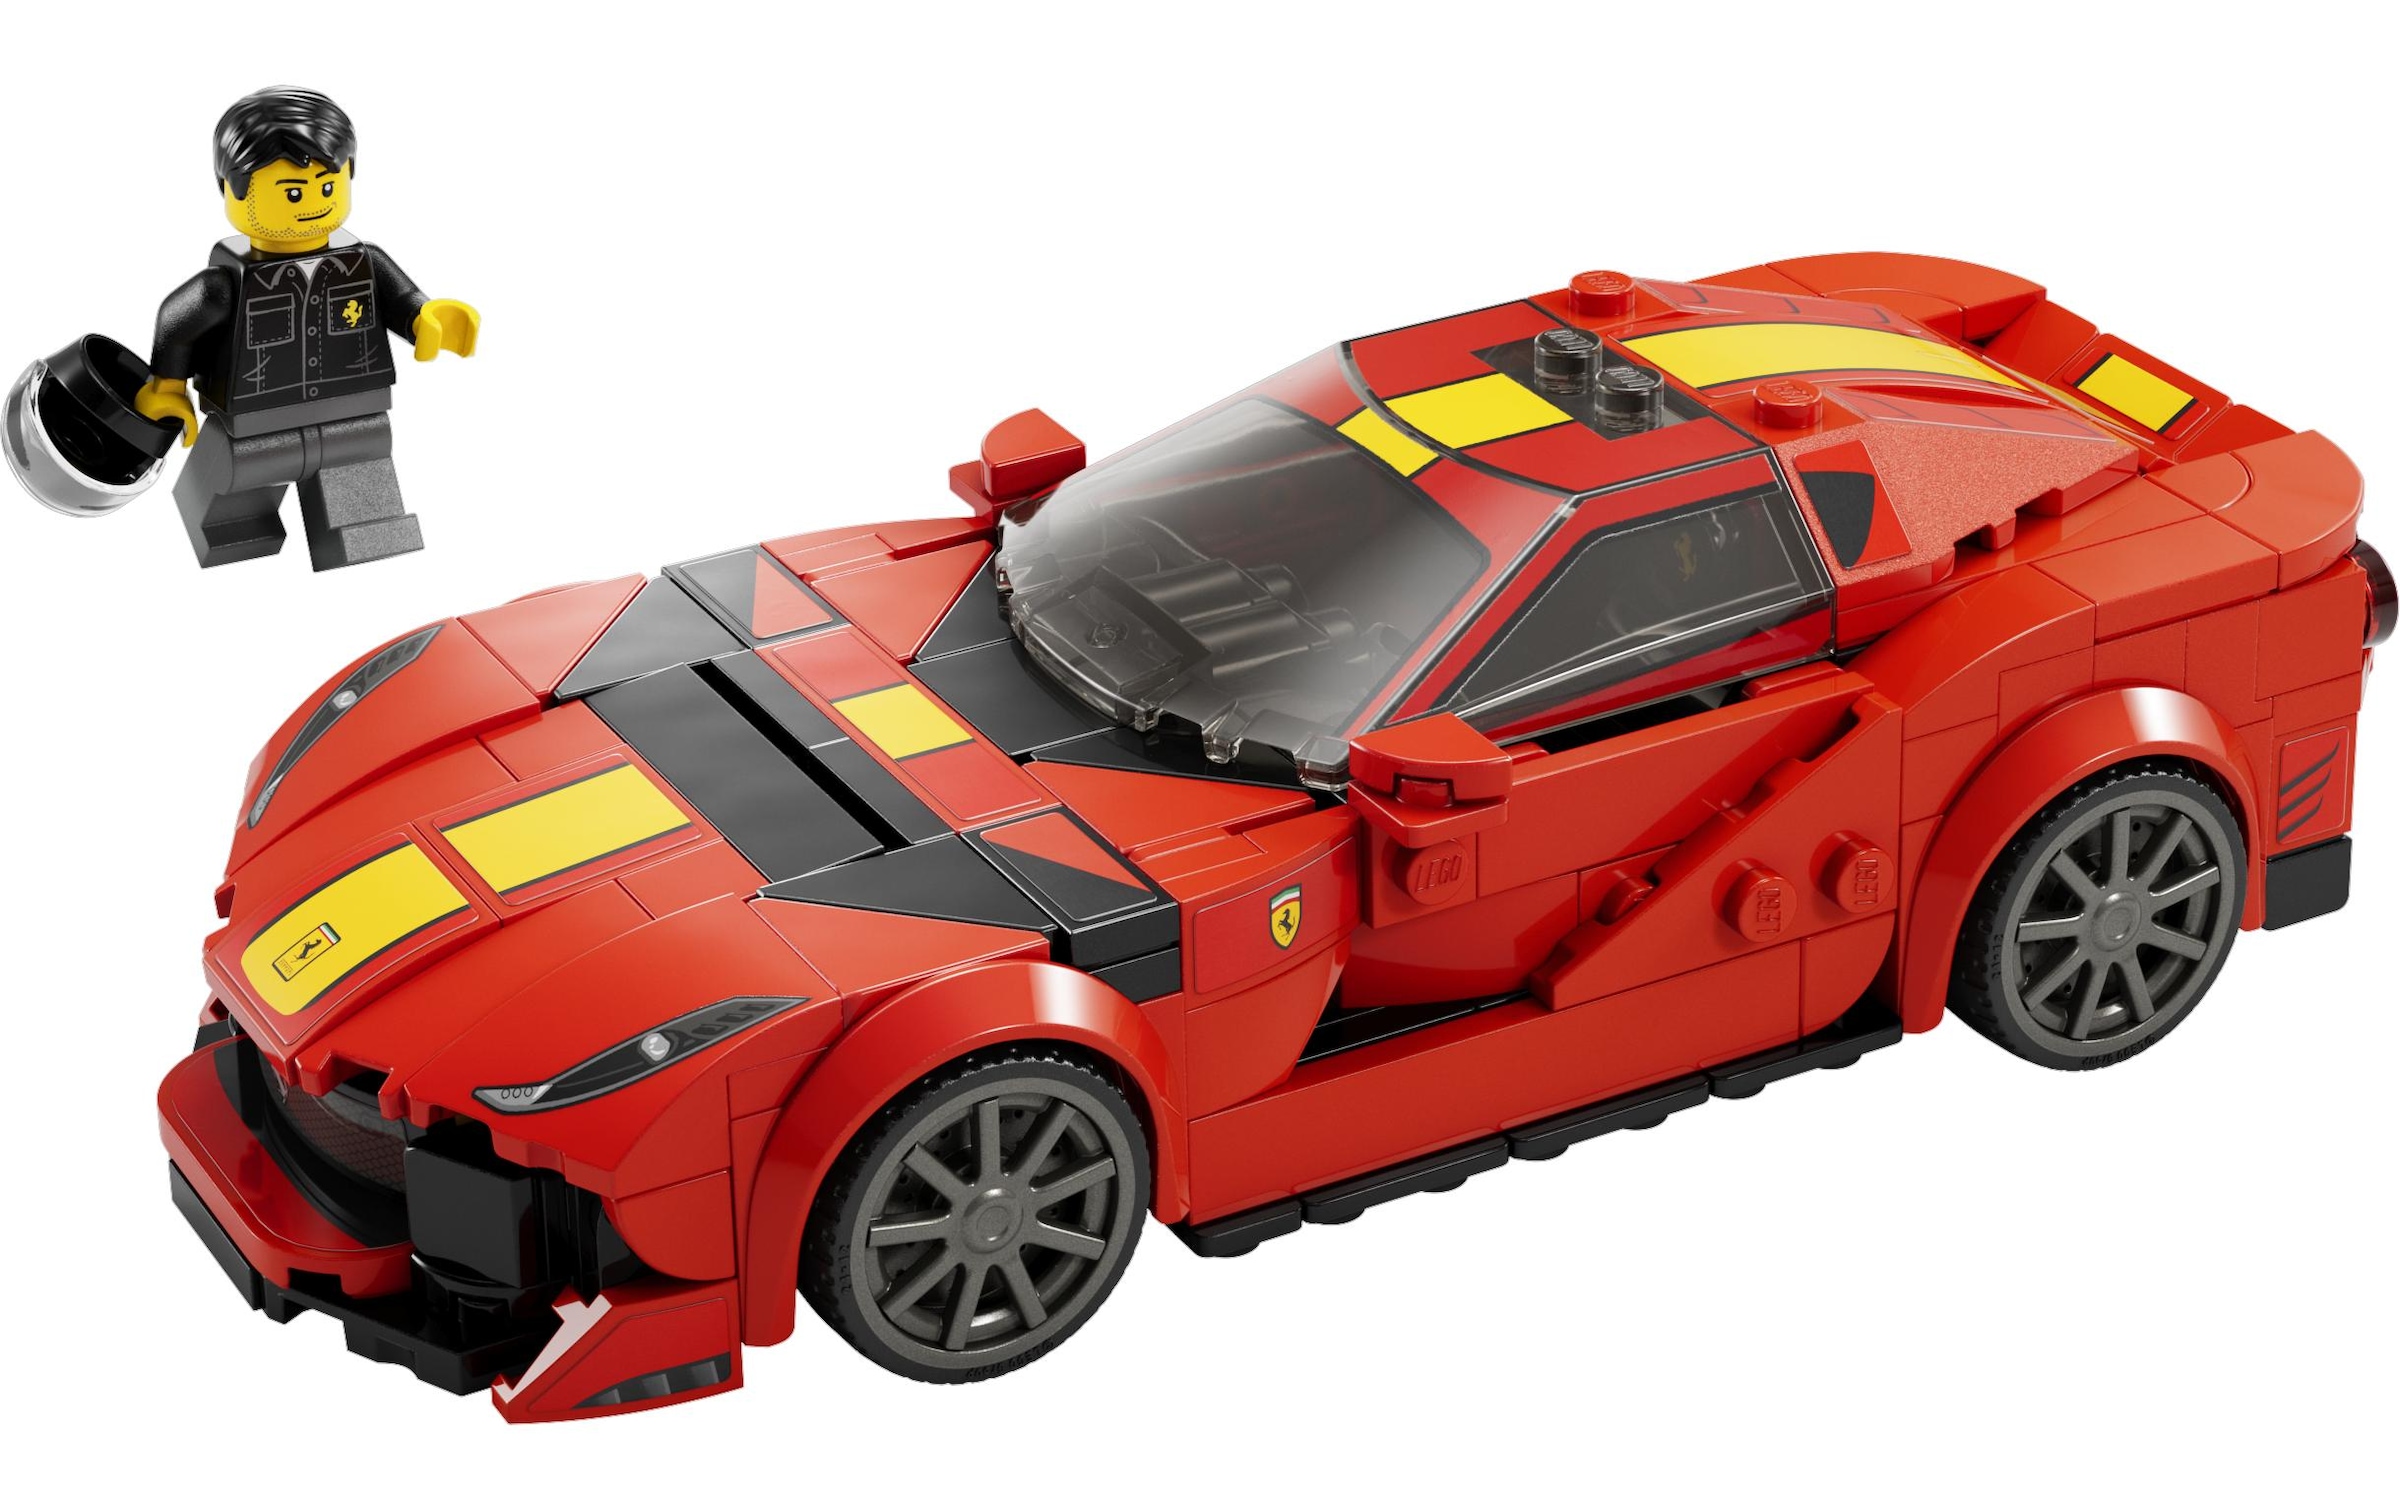 LEGO® Konstruktionsspielsteine »812 Competizione«